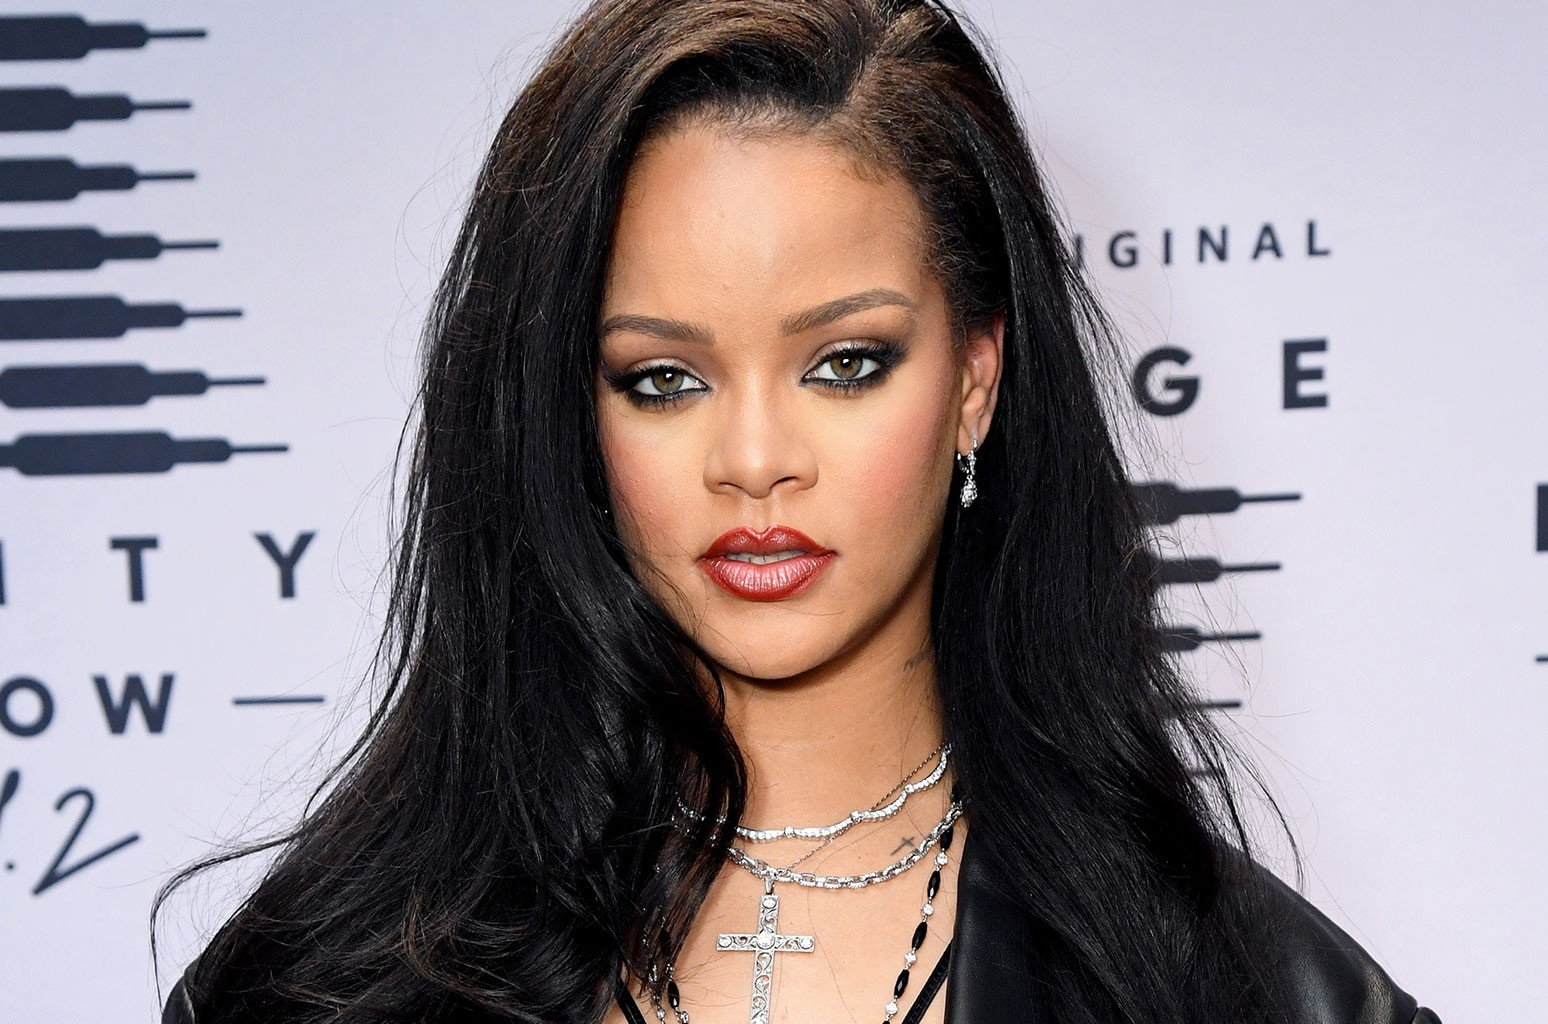 El embarazo dispara la creatividad de Rihanna en cuanto a belleza